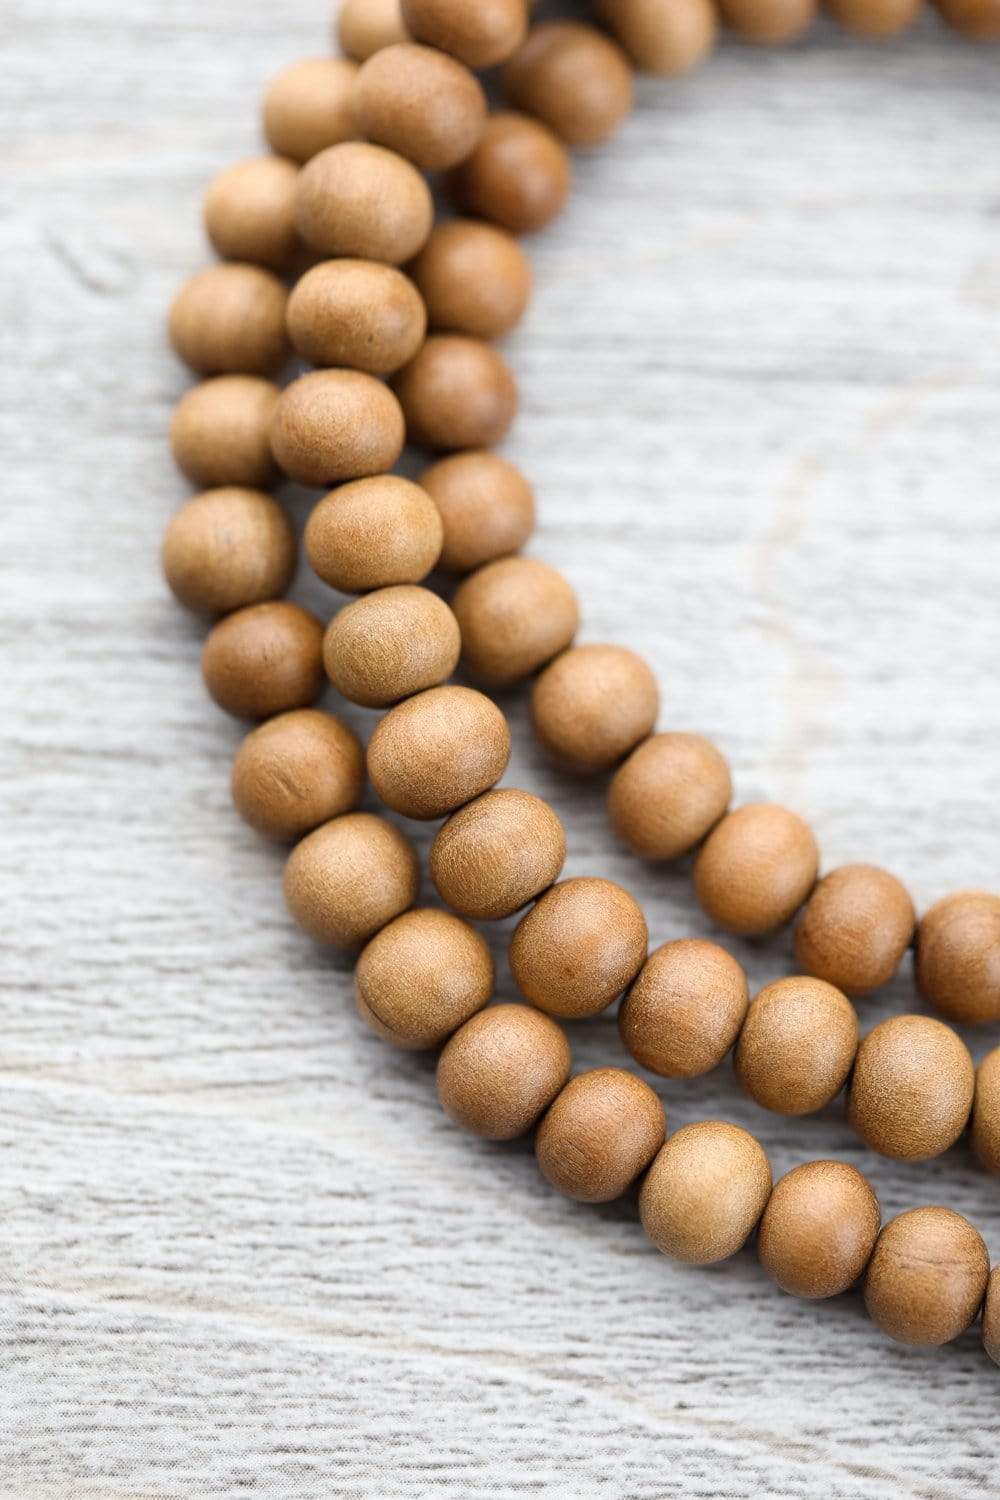 Mala Bracelets  21 Sandalwood mala beads for yoga and meditation